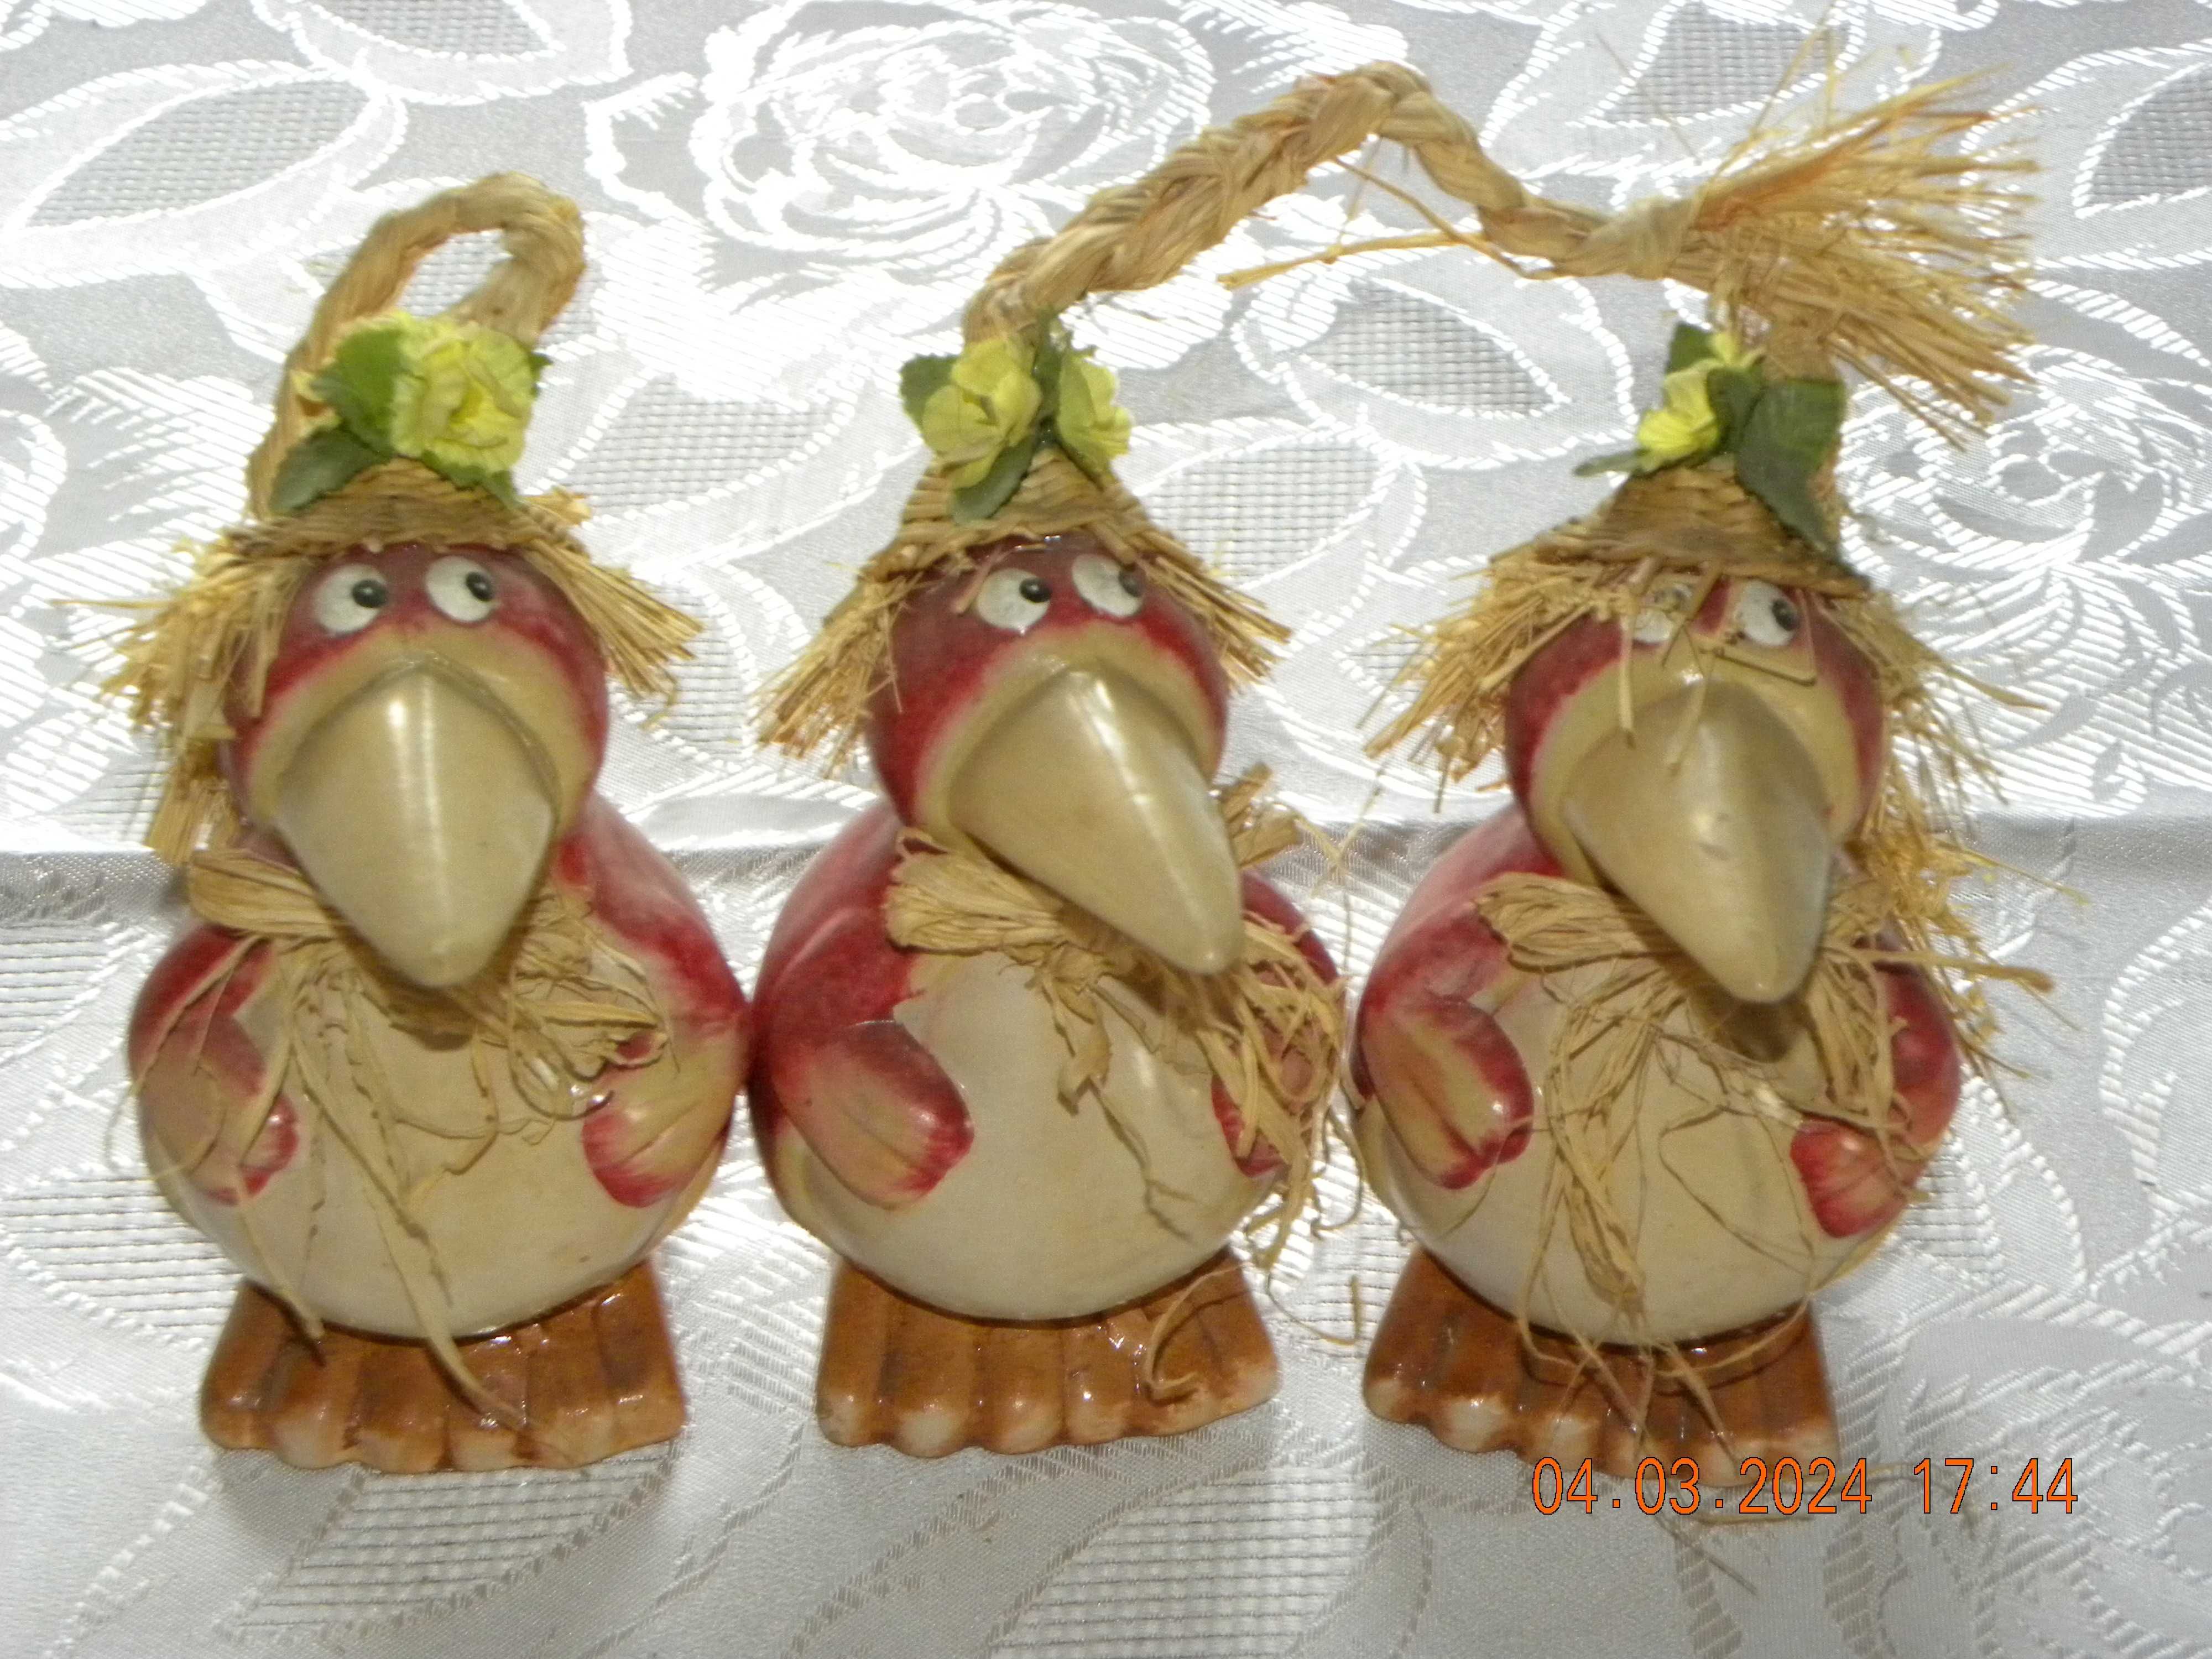 Trojaczki - figurki ceramiczne